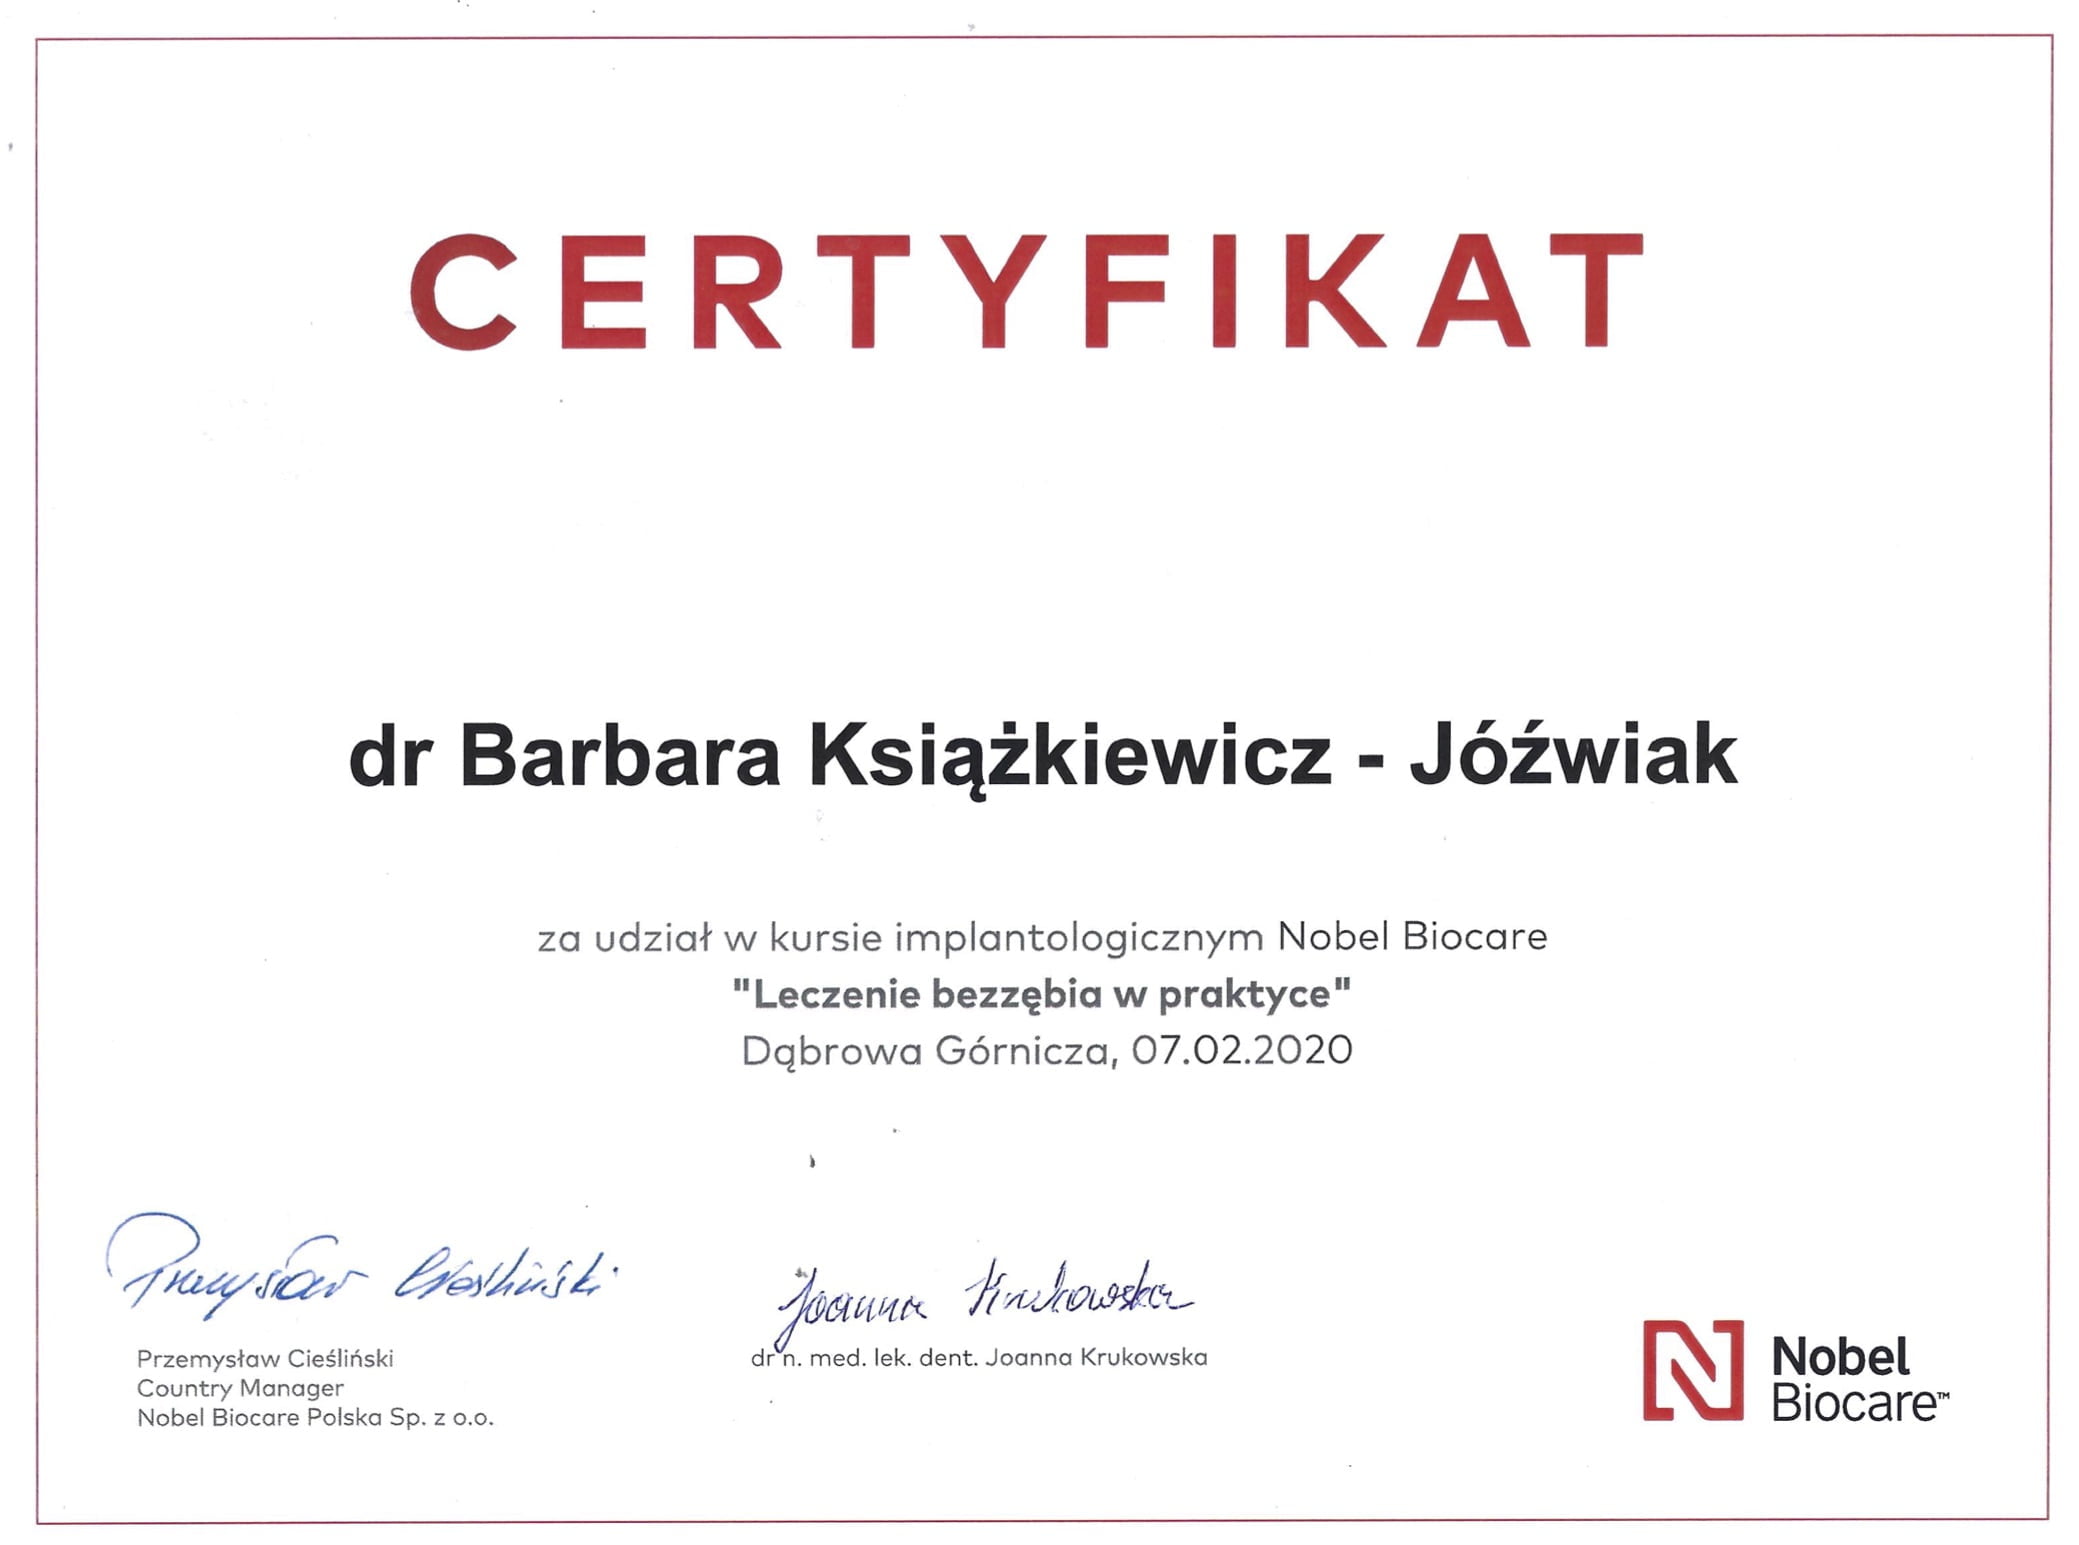 Barbara Książkiewicz-Jóźwiak certyfikat 10